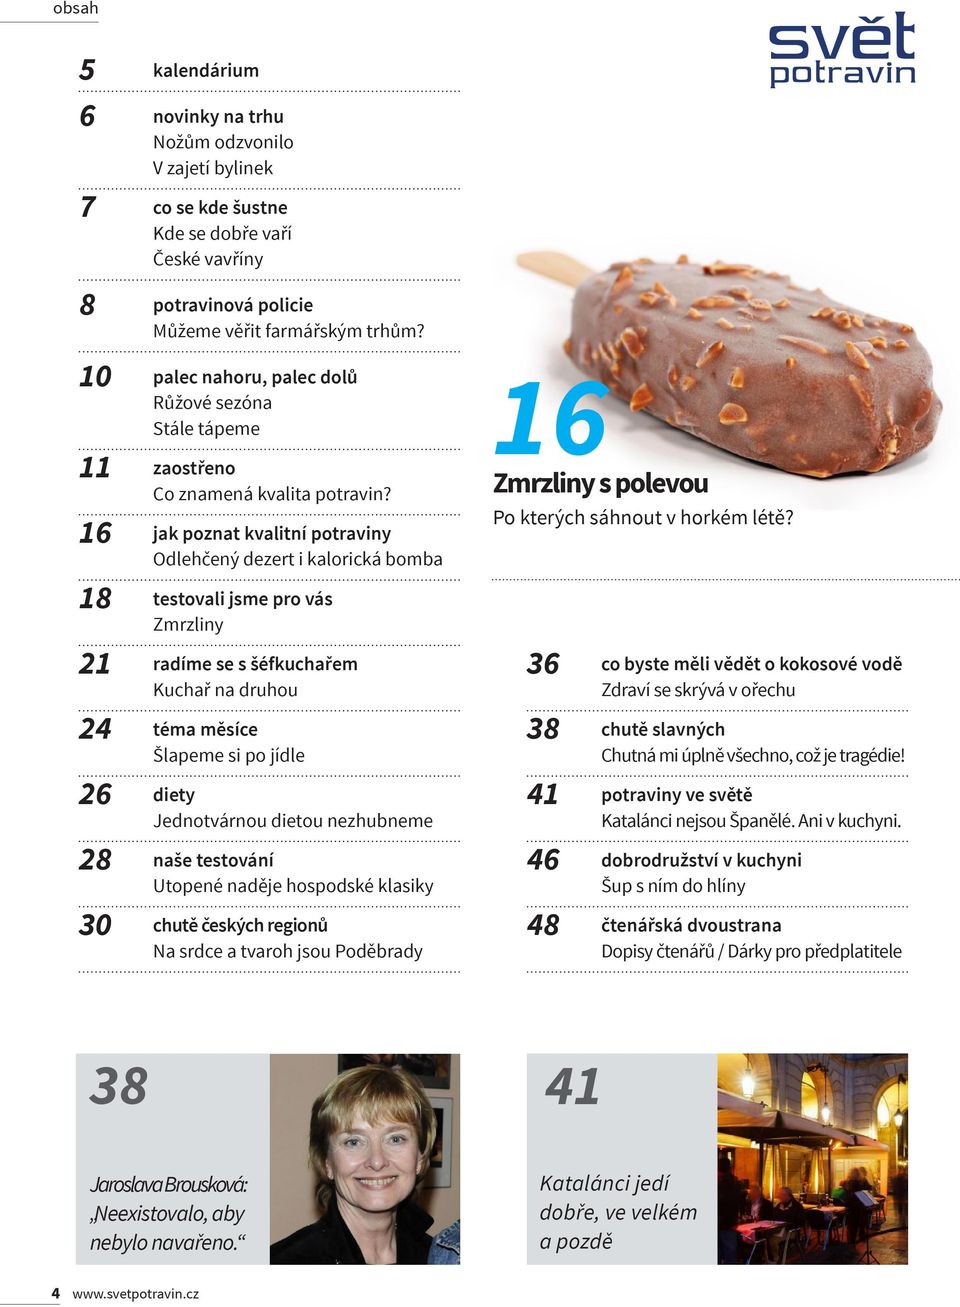 16 jak poznat kvalitní potraviny Odlehčený dezert i kalorická bomba 18 testovali jsme pro vás Zmrzliny 21 radíme se s šéfkuchařem Kuchař na druhou 24 téma měsíce Šlapeme si po jídle 26 diety